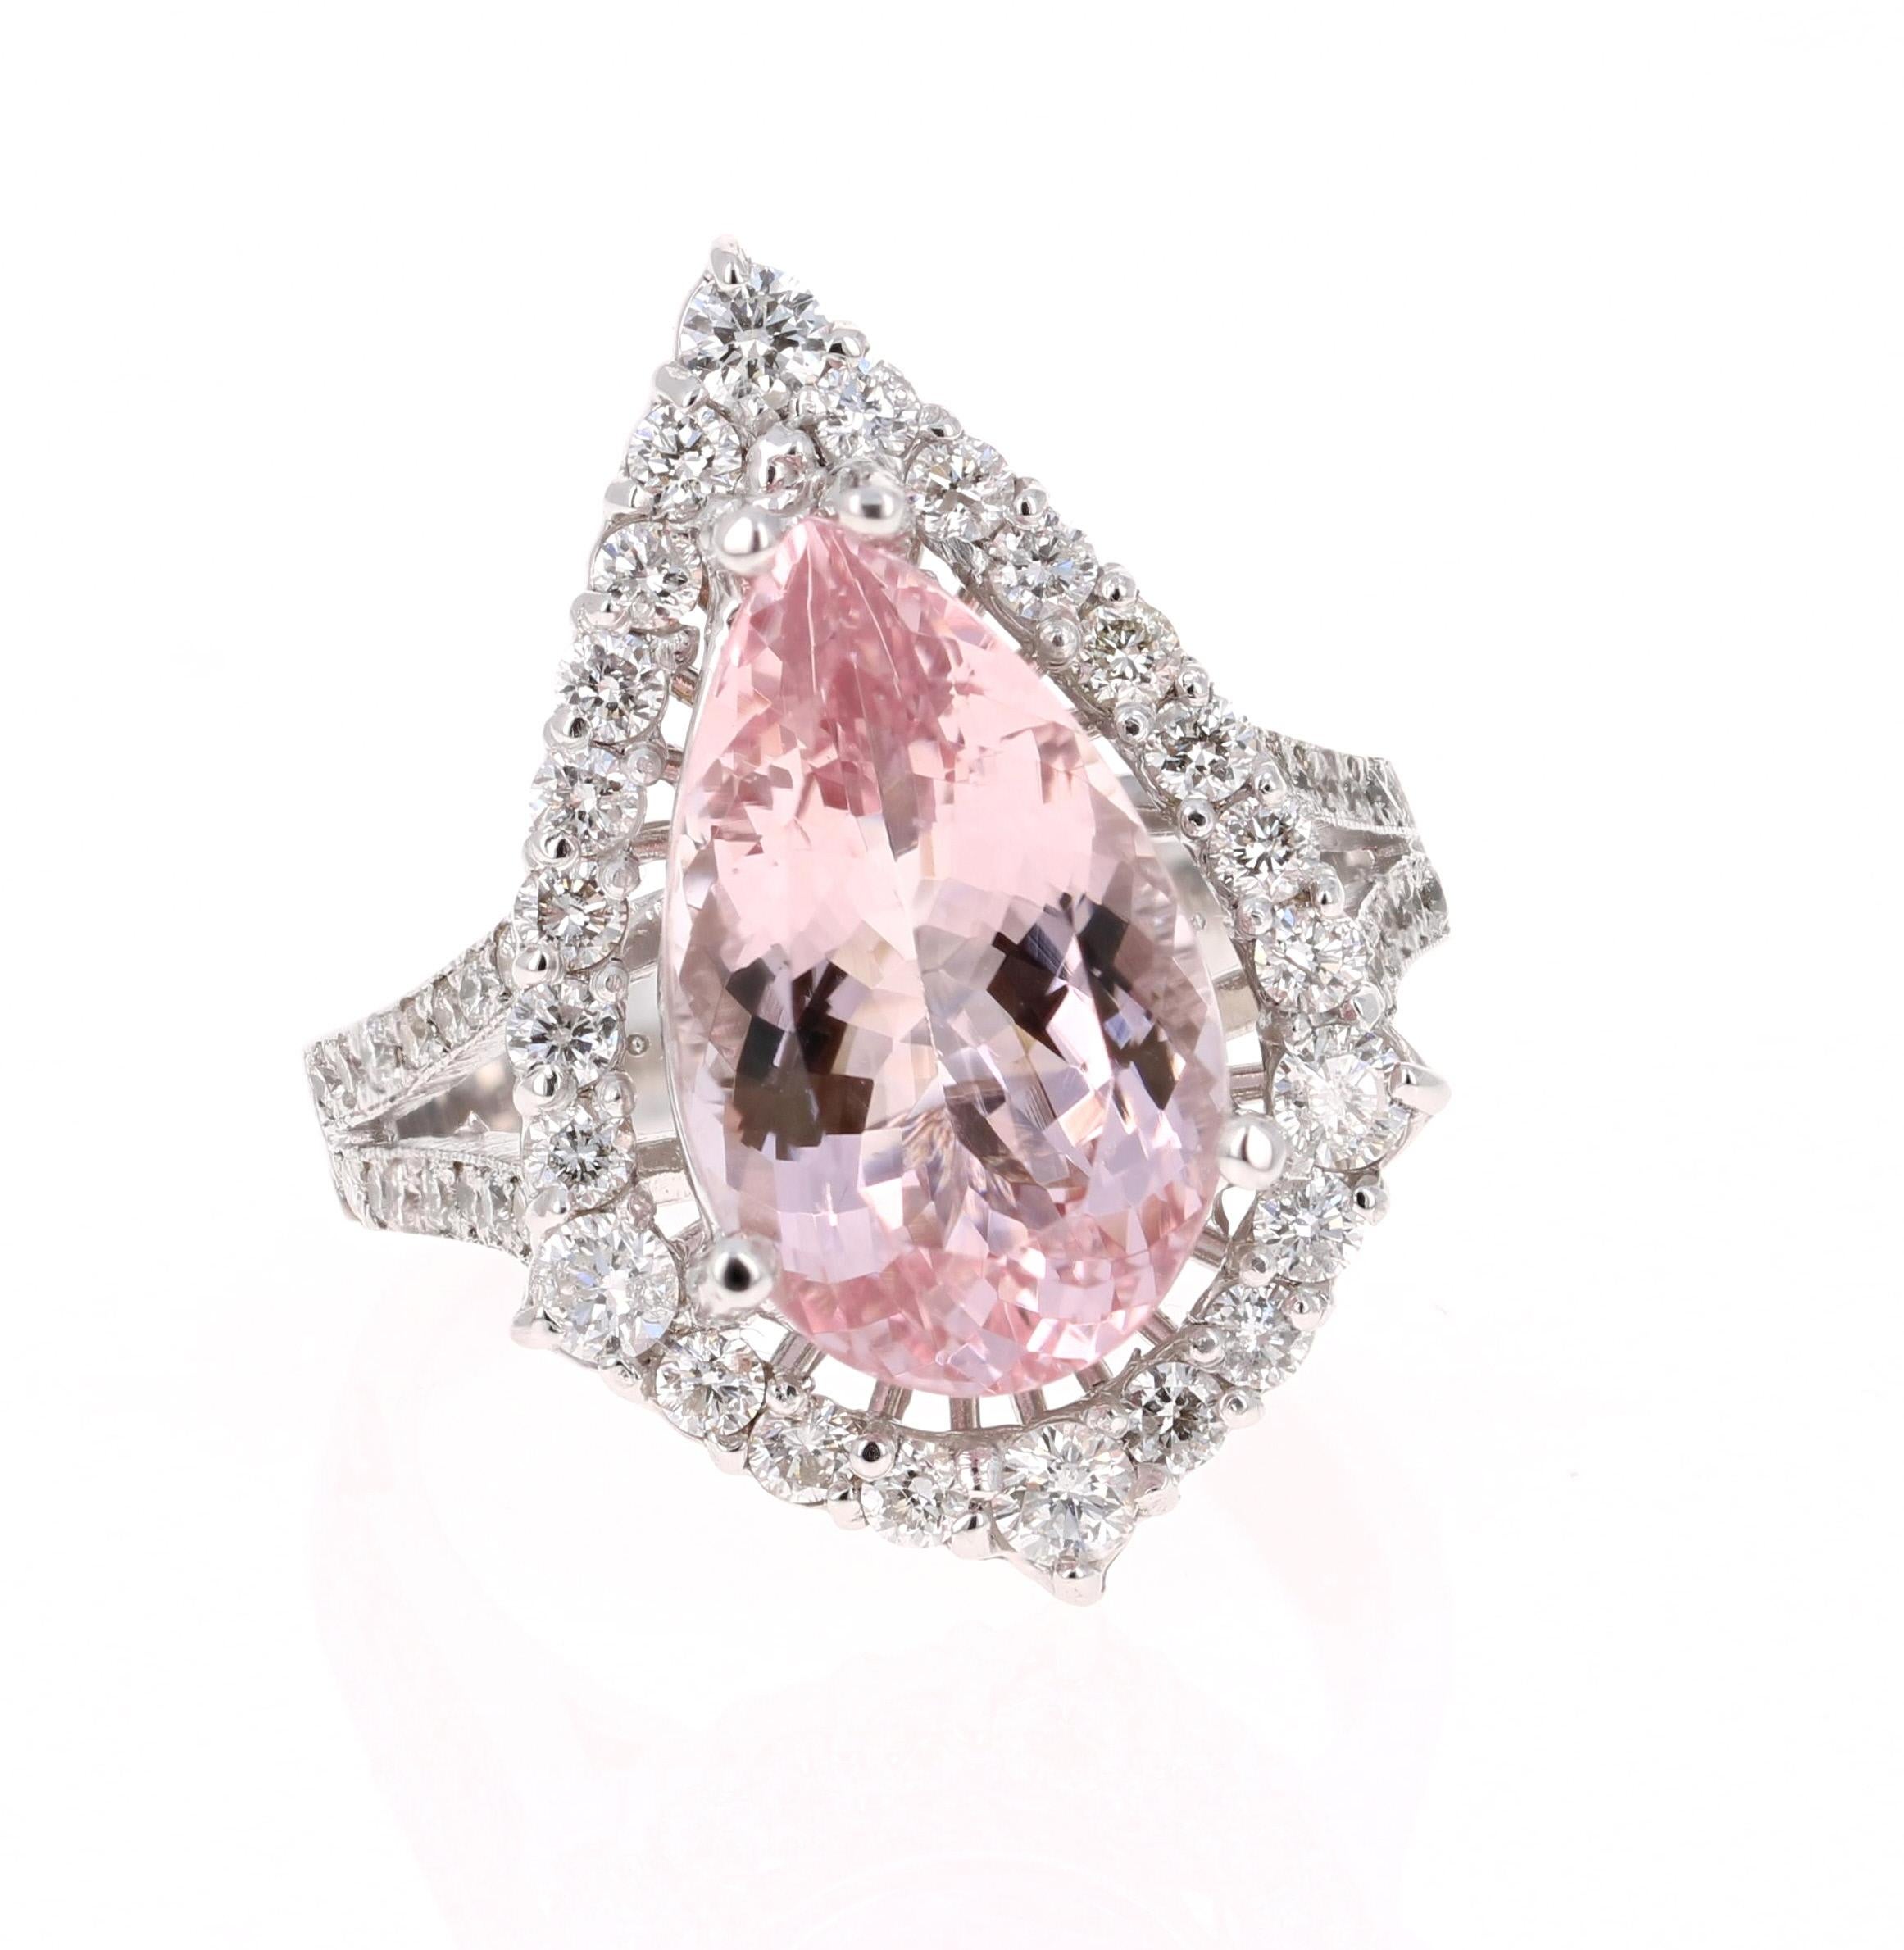 Cette bague en morganite présente une superbe morganite rose de 5,16 carats taillée en poire et est entourée de 52 diamants ronds pesant 1,02 carat. Les diamants ont une clarté et une couleur de SI-F. Le poids total en carats de la bague est de 6.18